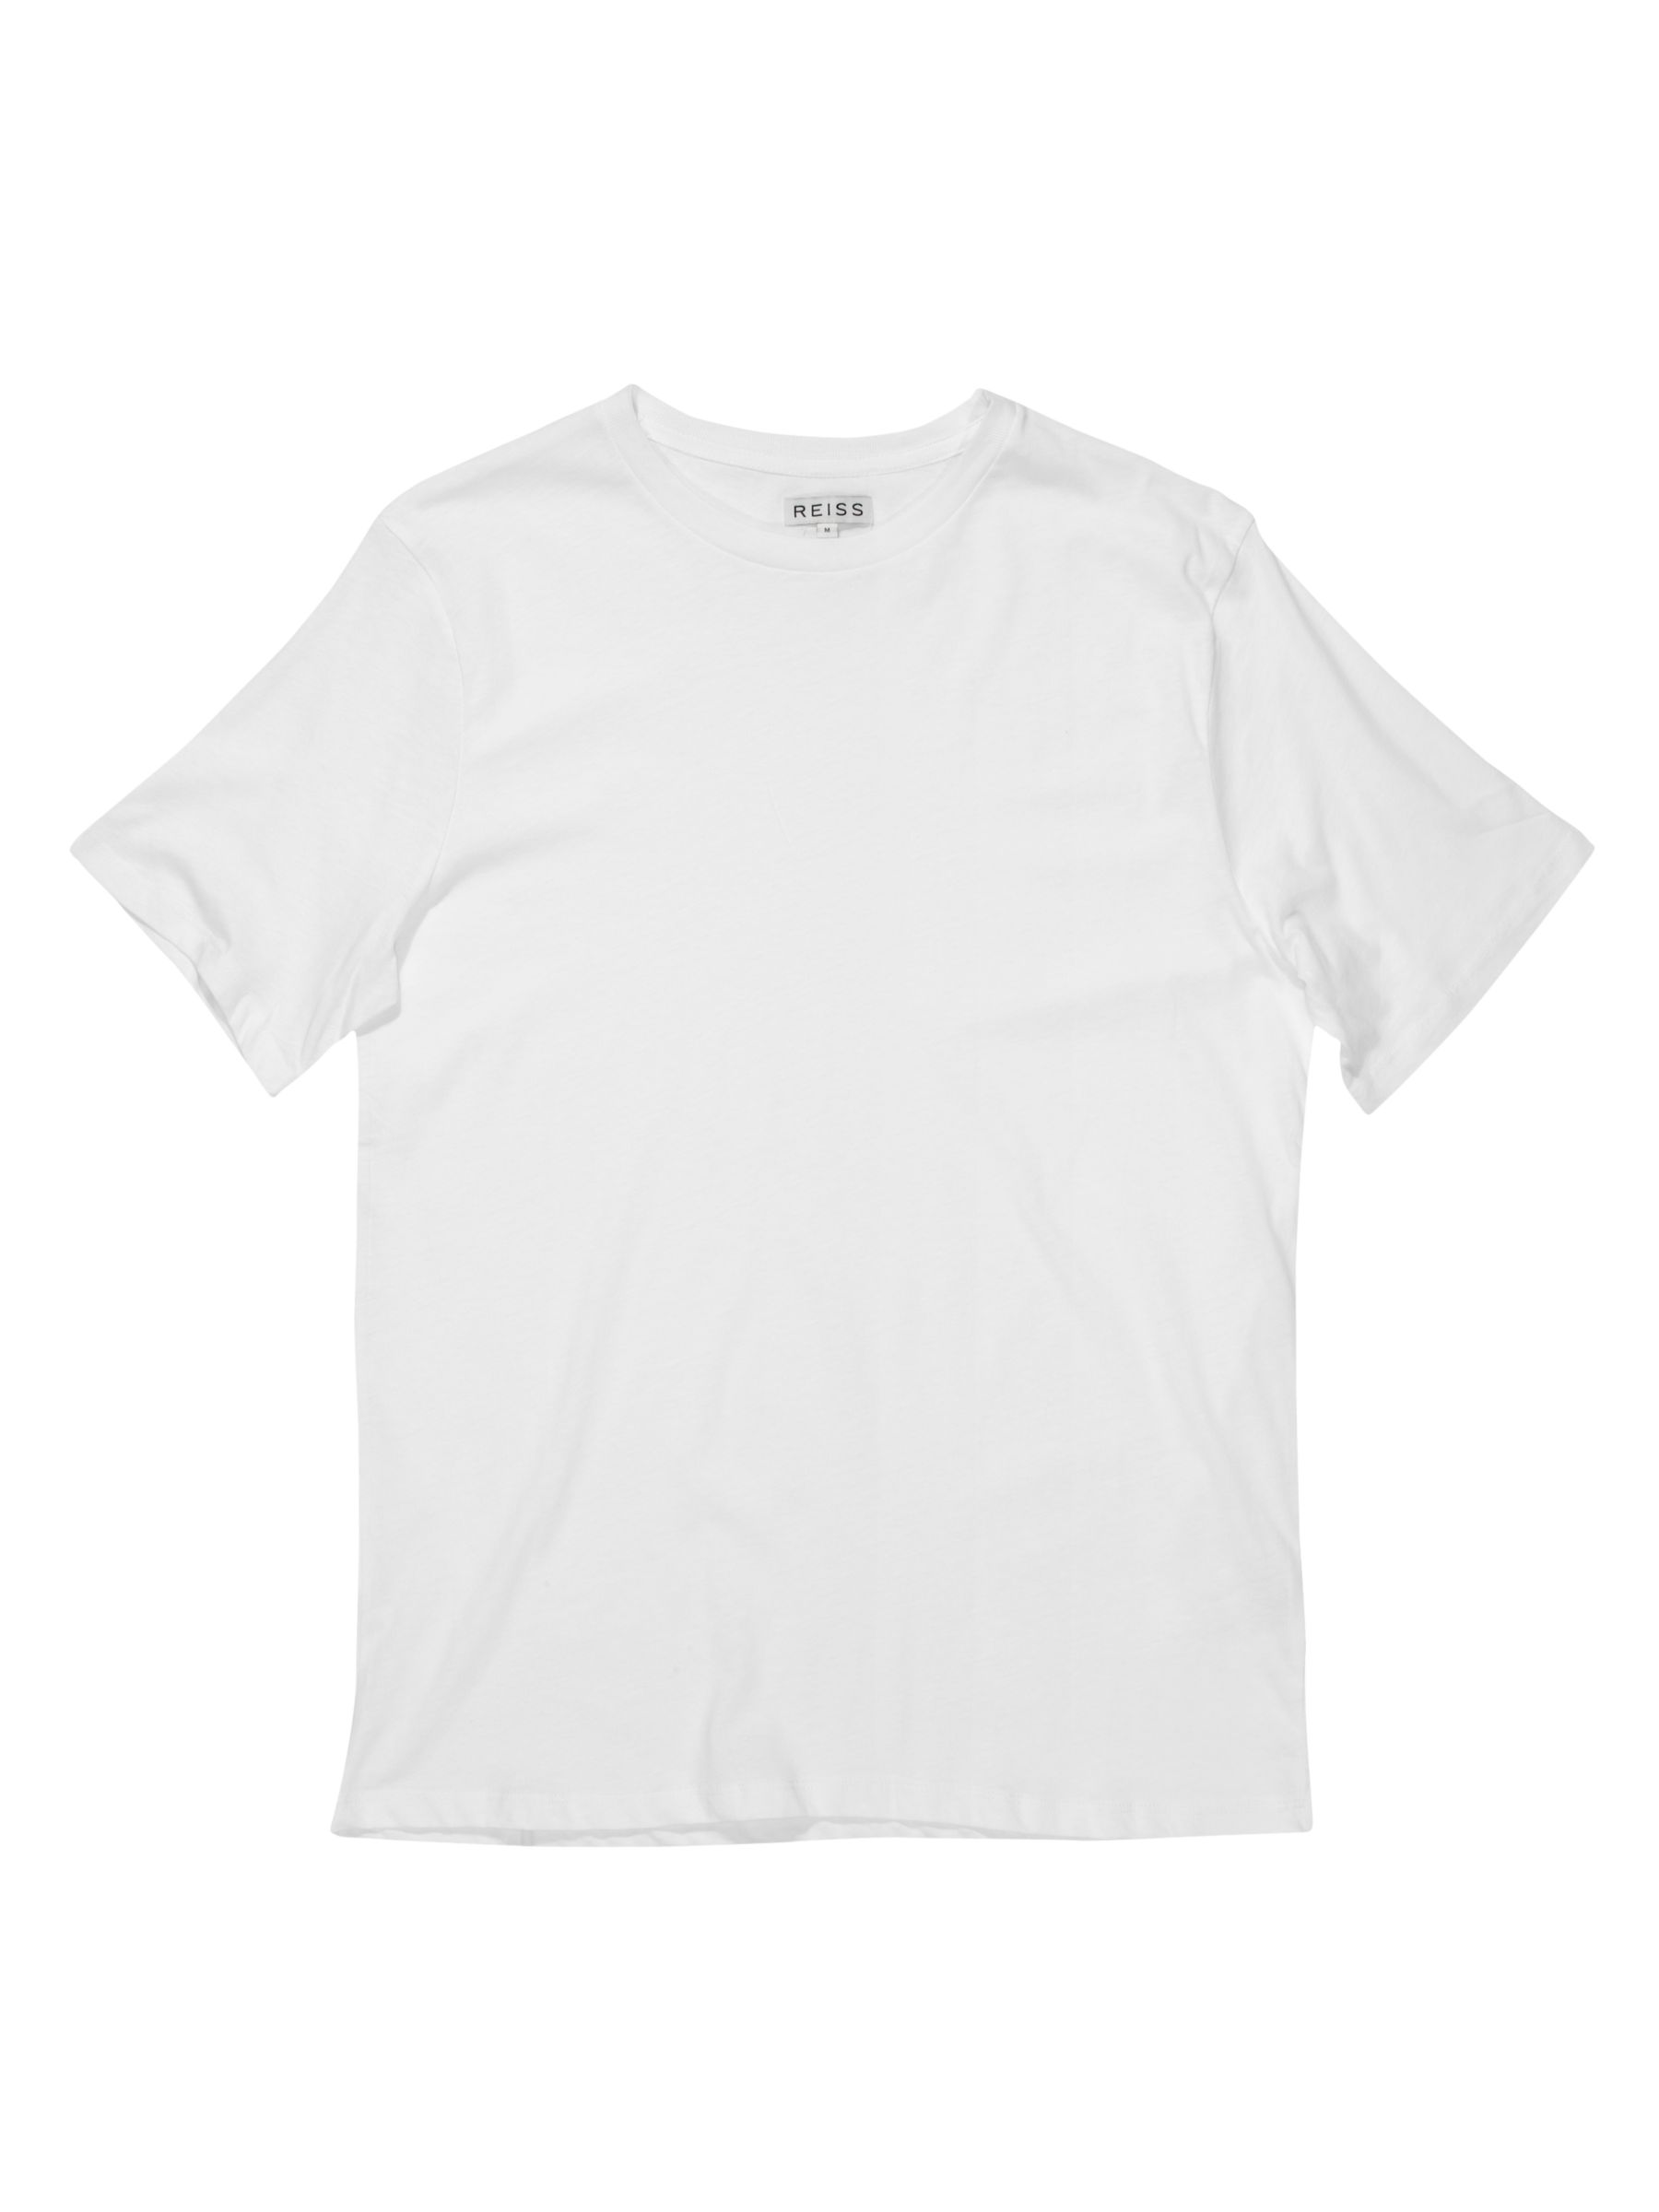 Bless Basic Crew Neck T-Shirt, White